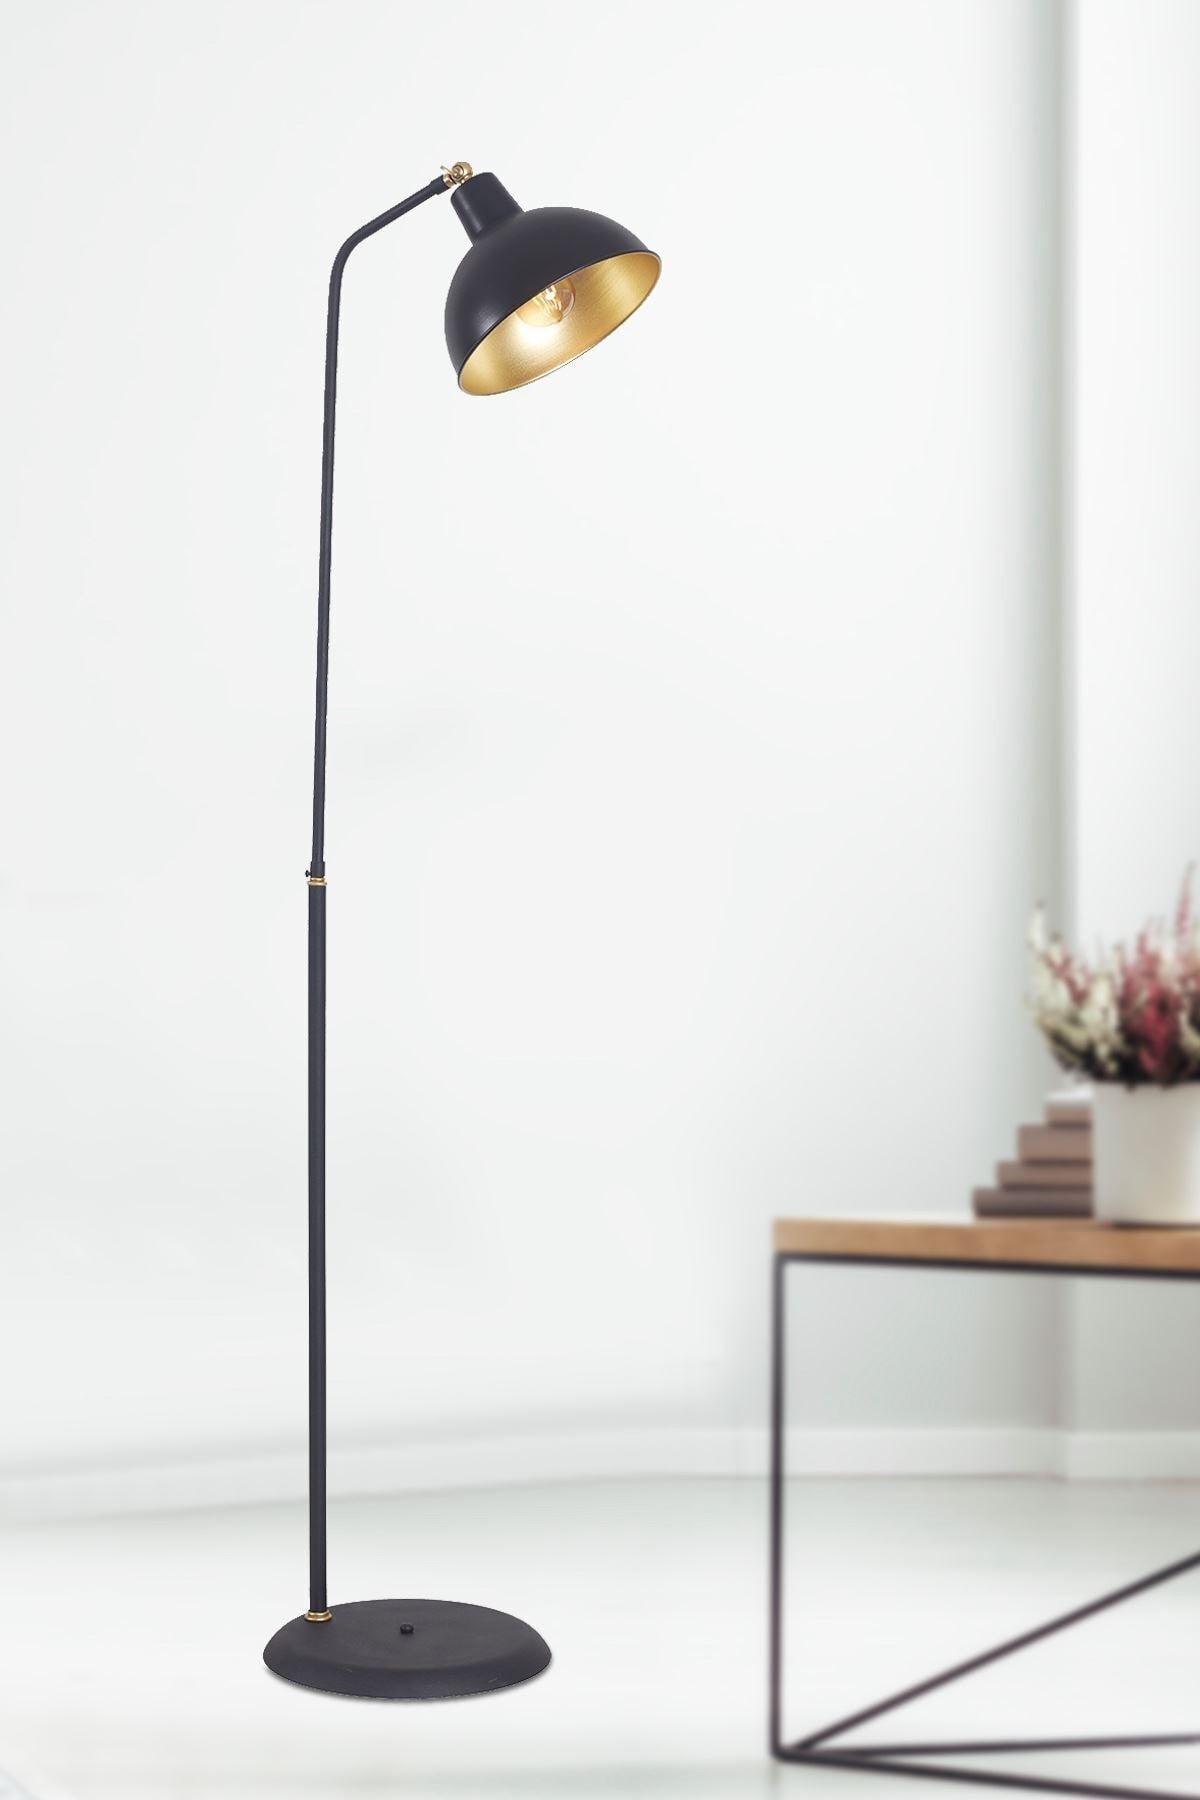 Dolce Yellow-black Metal Body Design Luxury Floor Lighting Floor Lamp - Swordslife